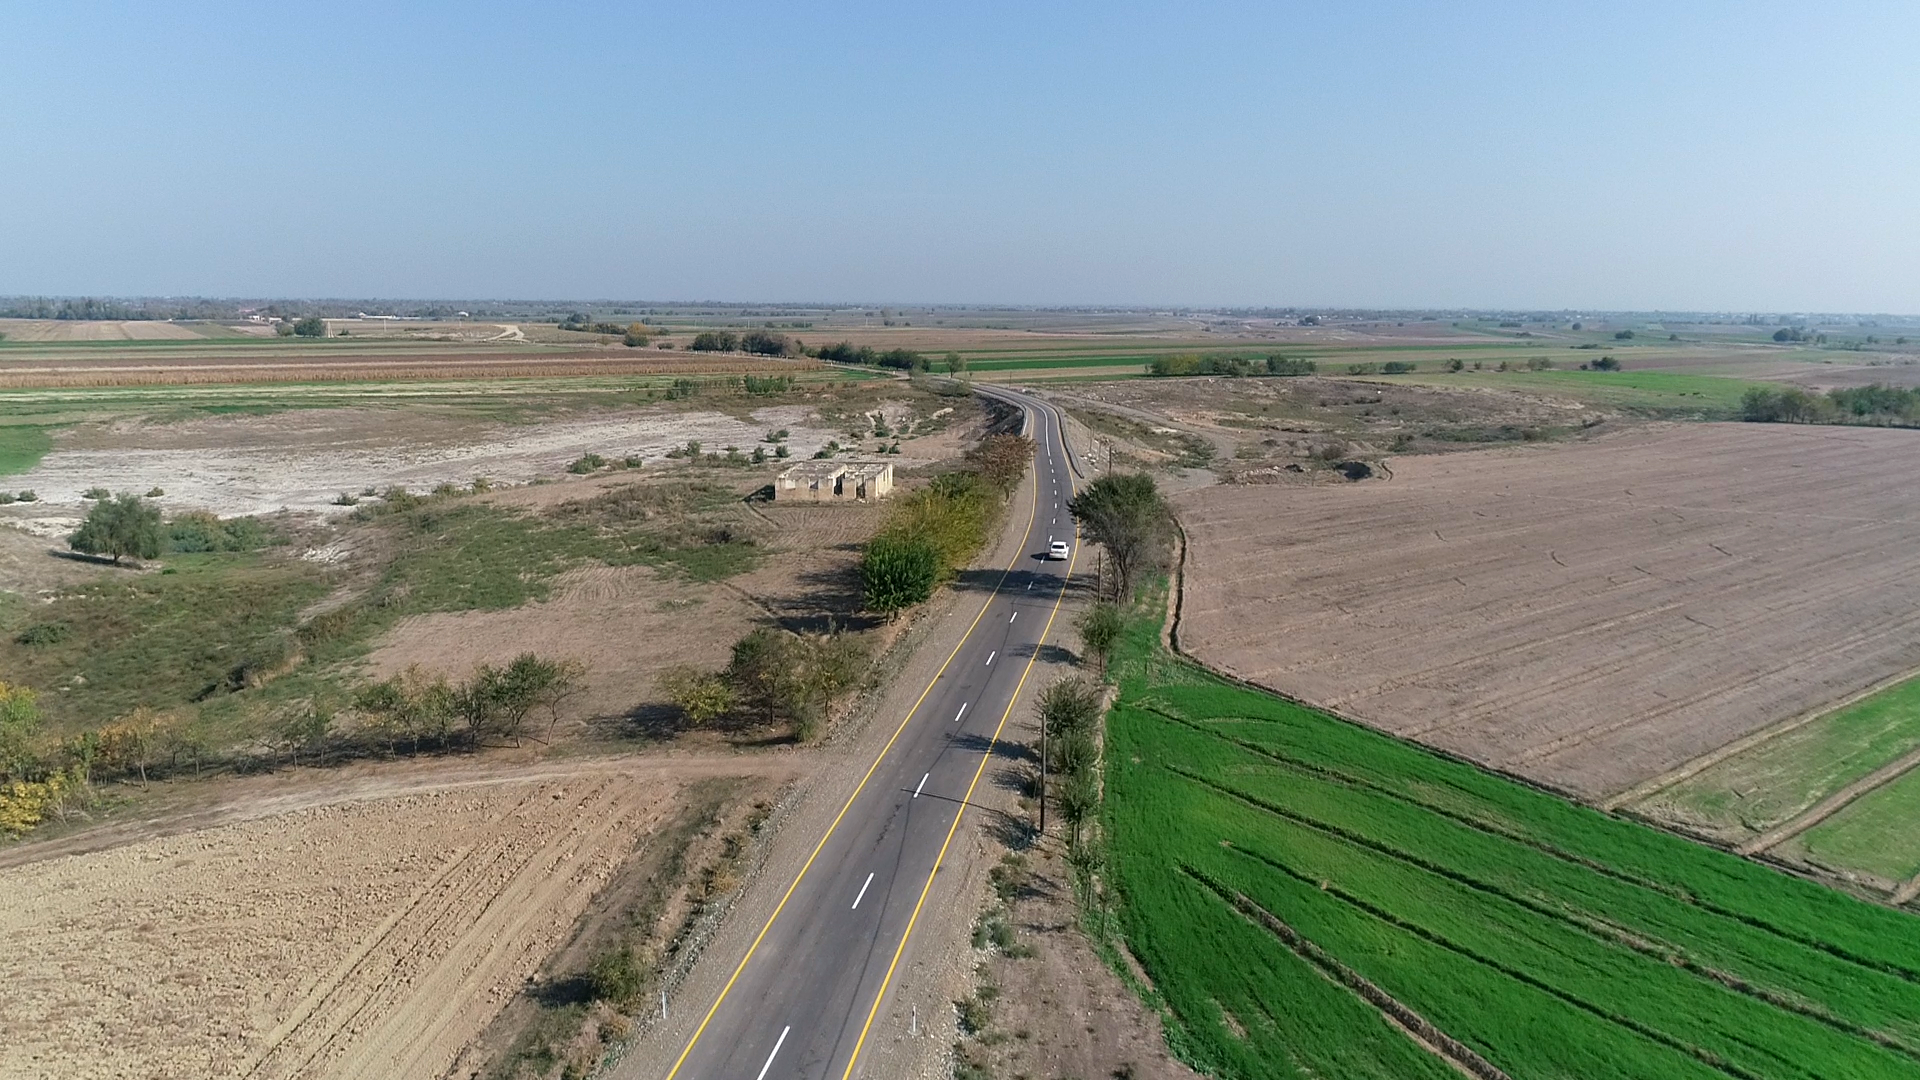 11 Ağcabədidə 18 km uzunluğunda yerli əhəmiyyətli yol yenidən qurulub